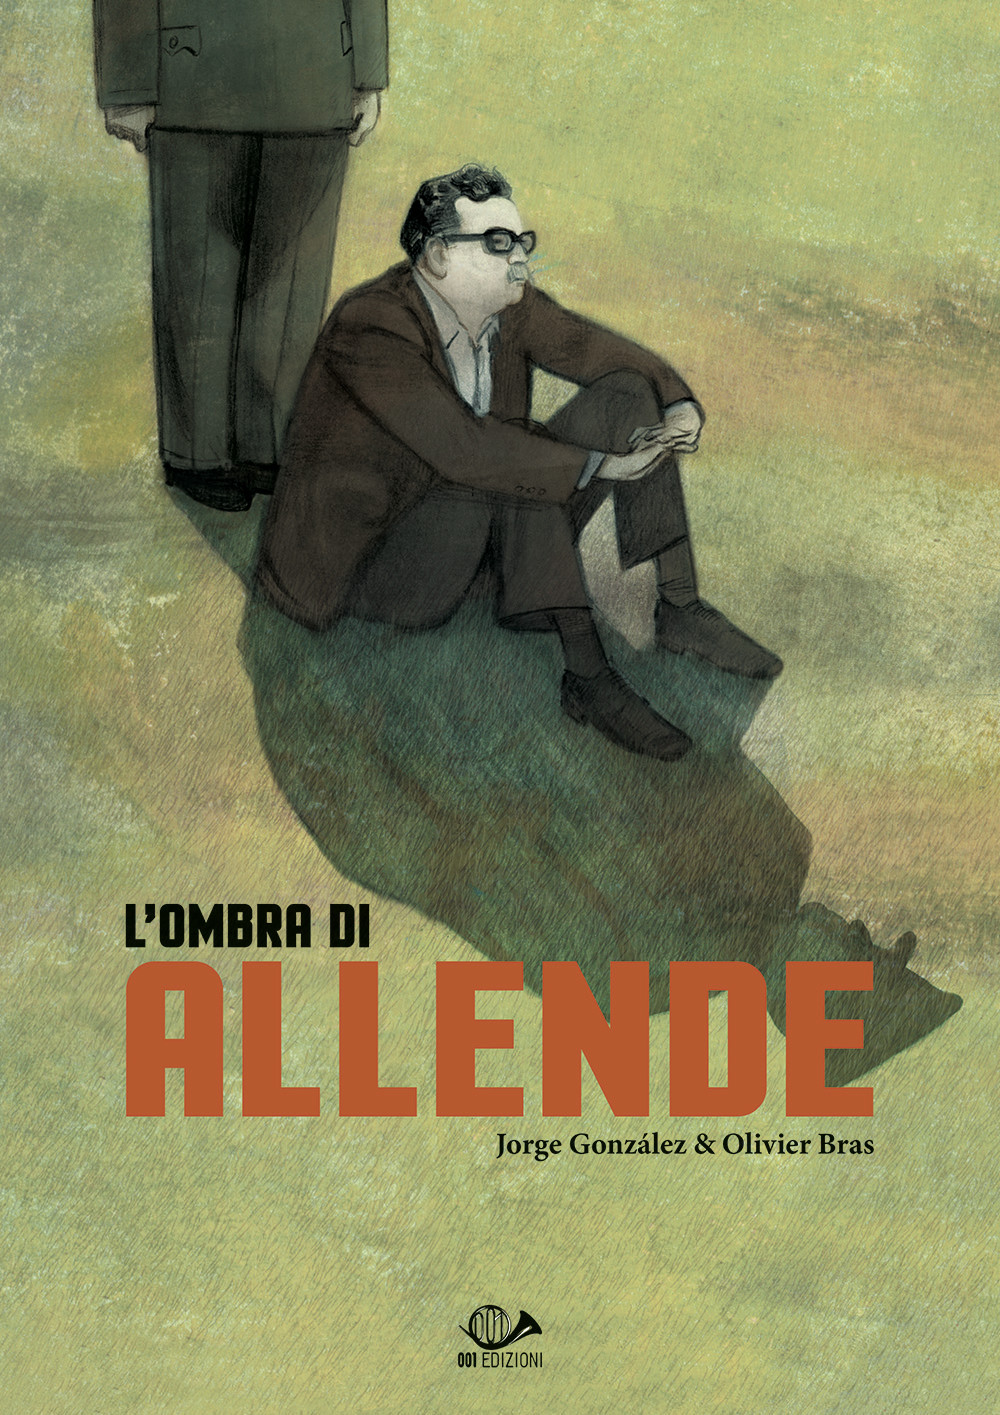 Jorge González, Olivier Bras – L' ombra di Allende (001 Edizioni, Torino 2019)